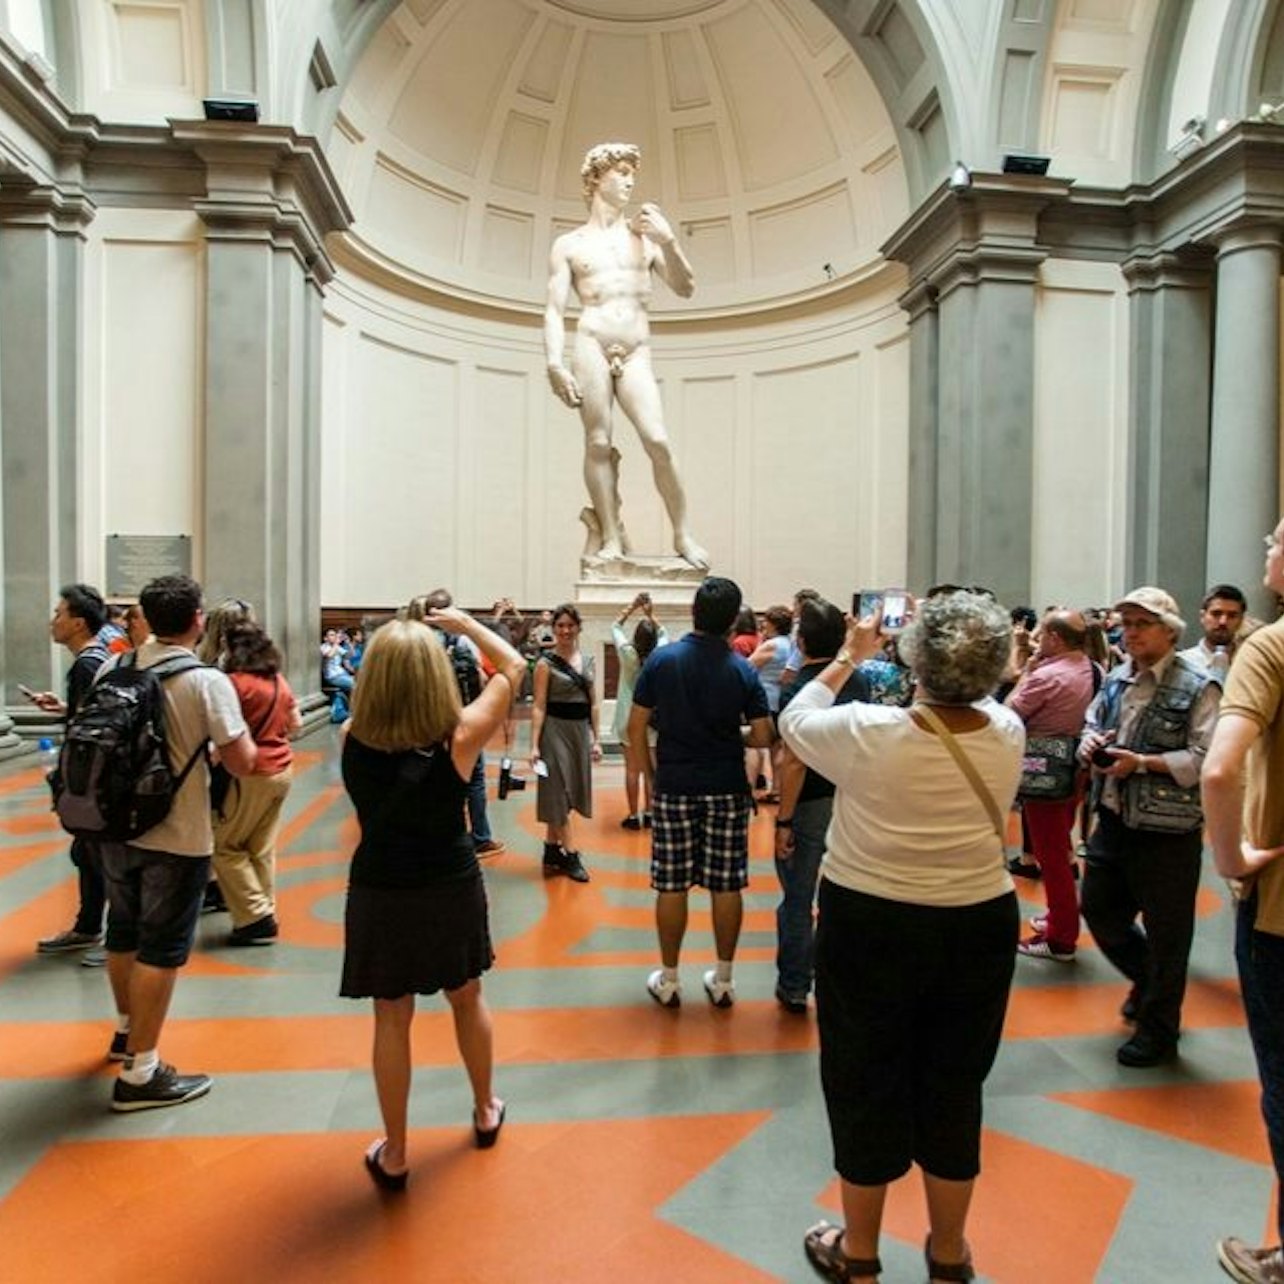 Galleria dell'Accademia: Ingresso riservato all'ultimo minuto - Alloggi in Firenze